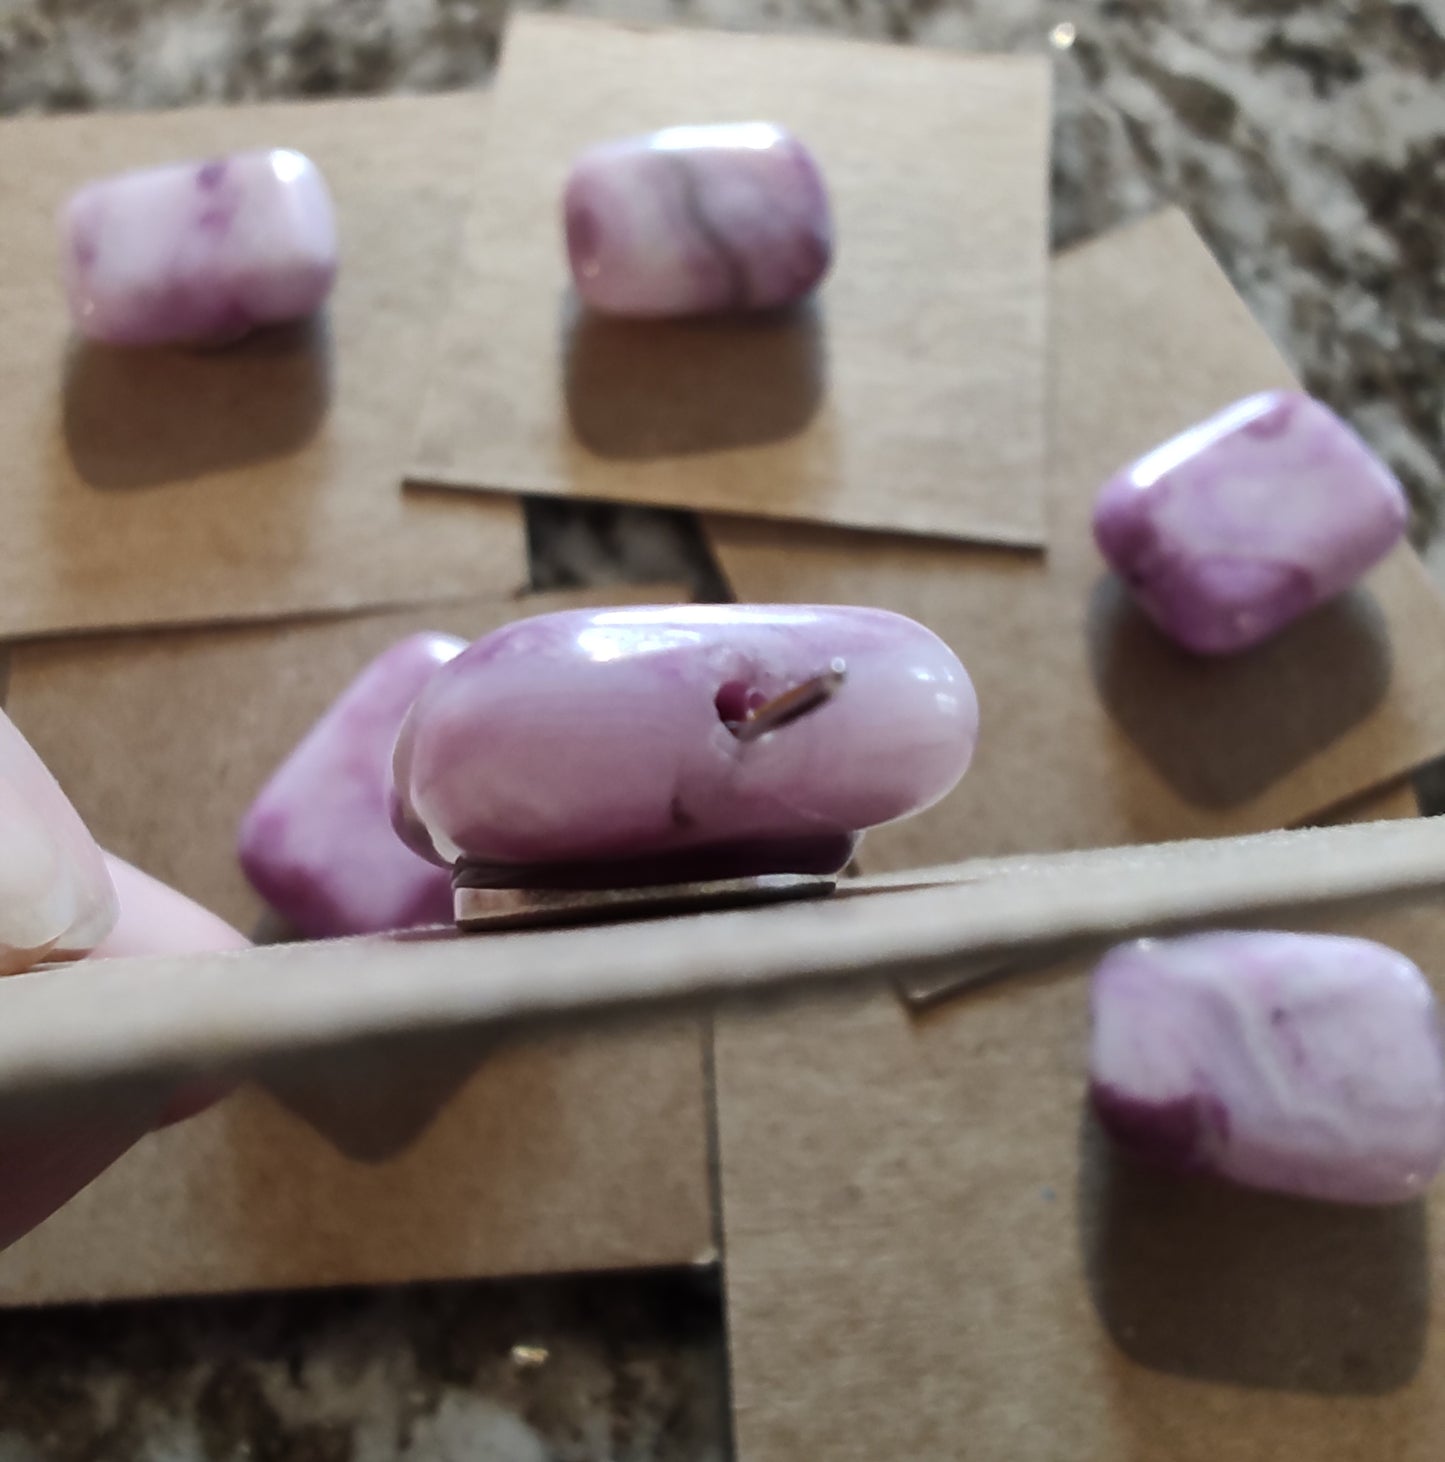 Needleminder-Purple Marble w/ needle hole